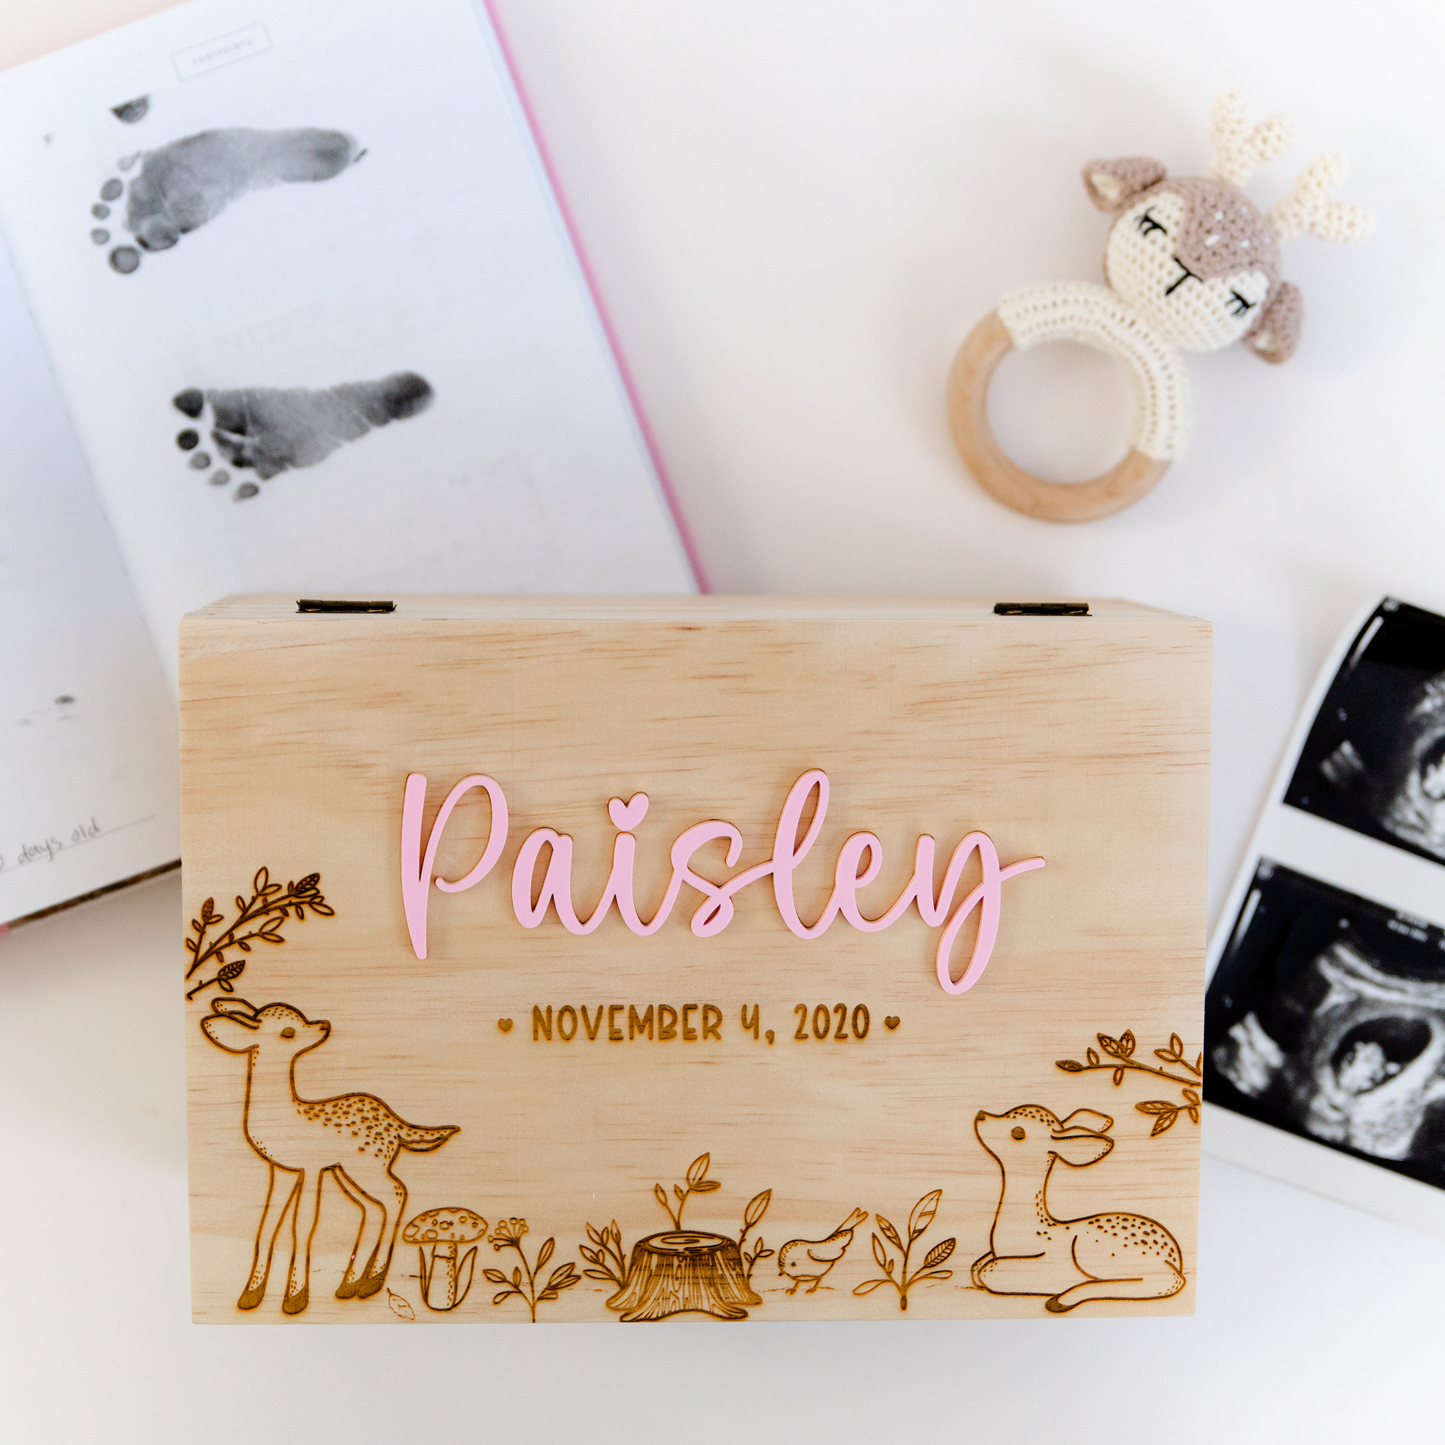 Baby Memories Box | Deer